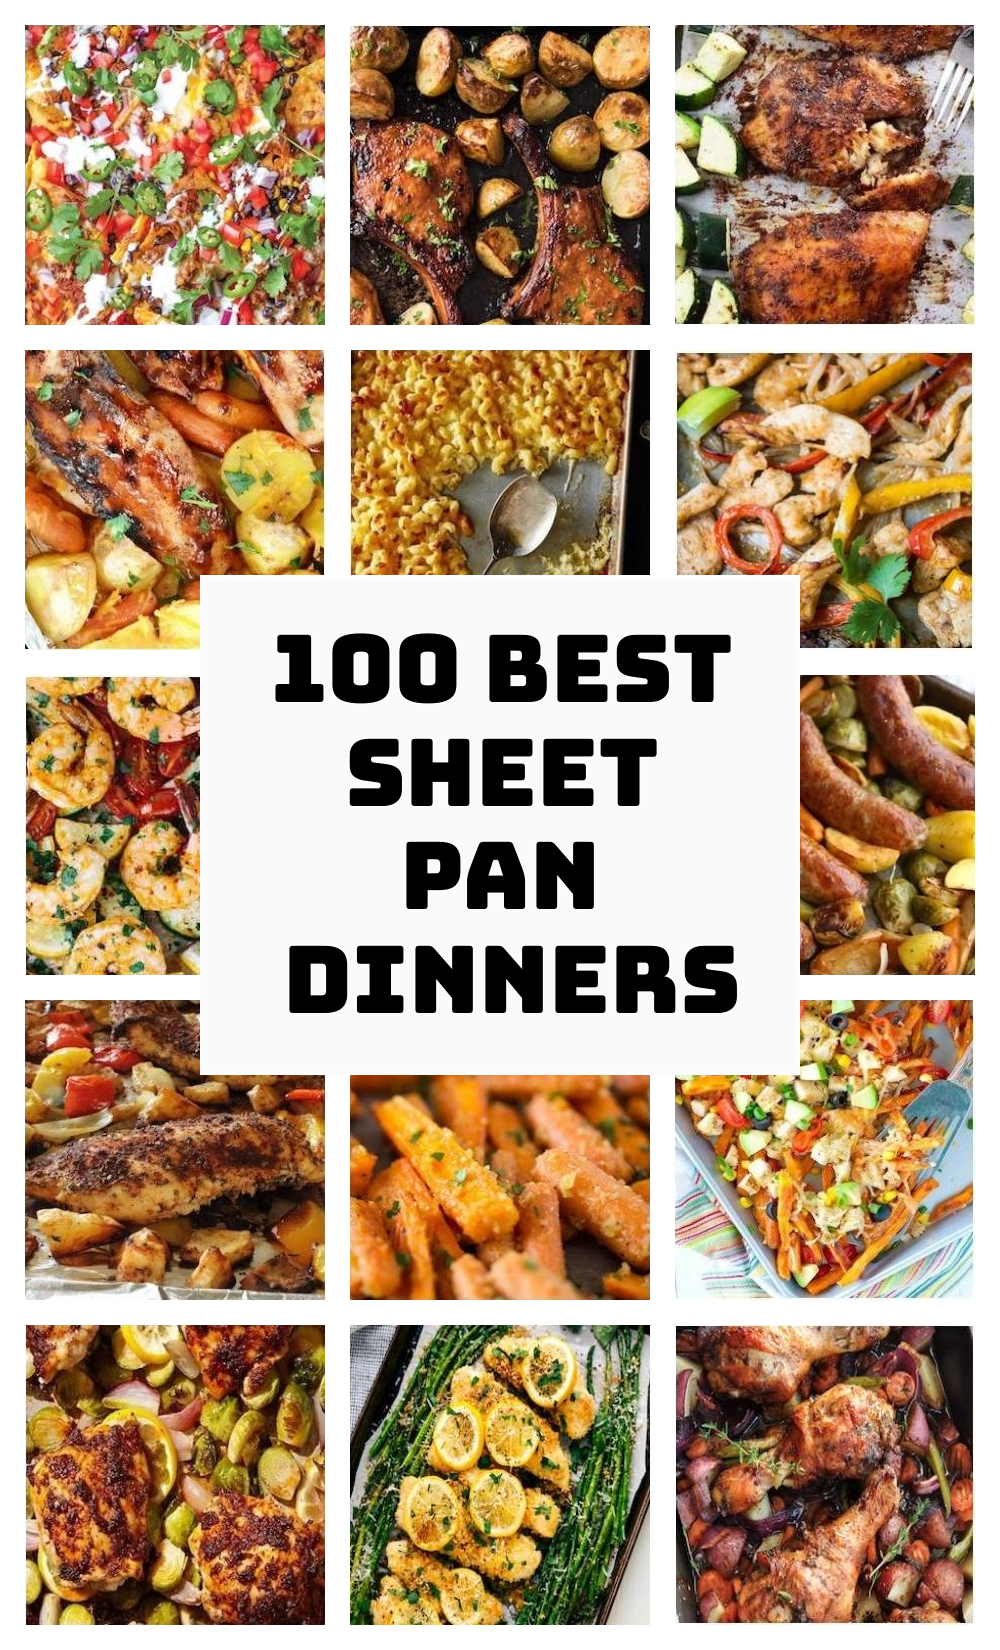 100 Best Sheet Pan Dinners